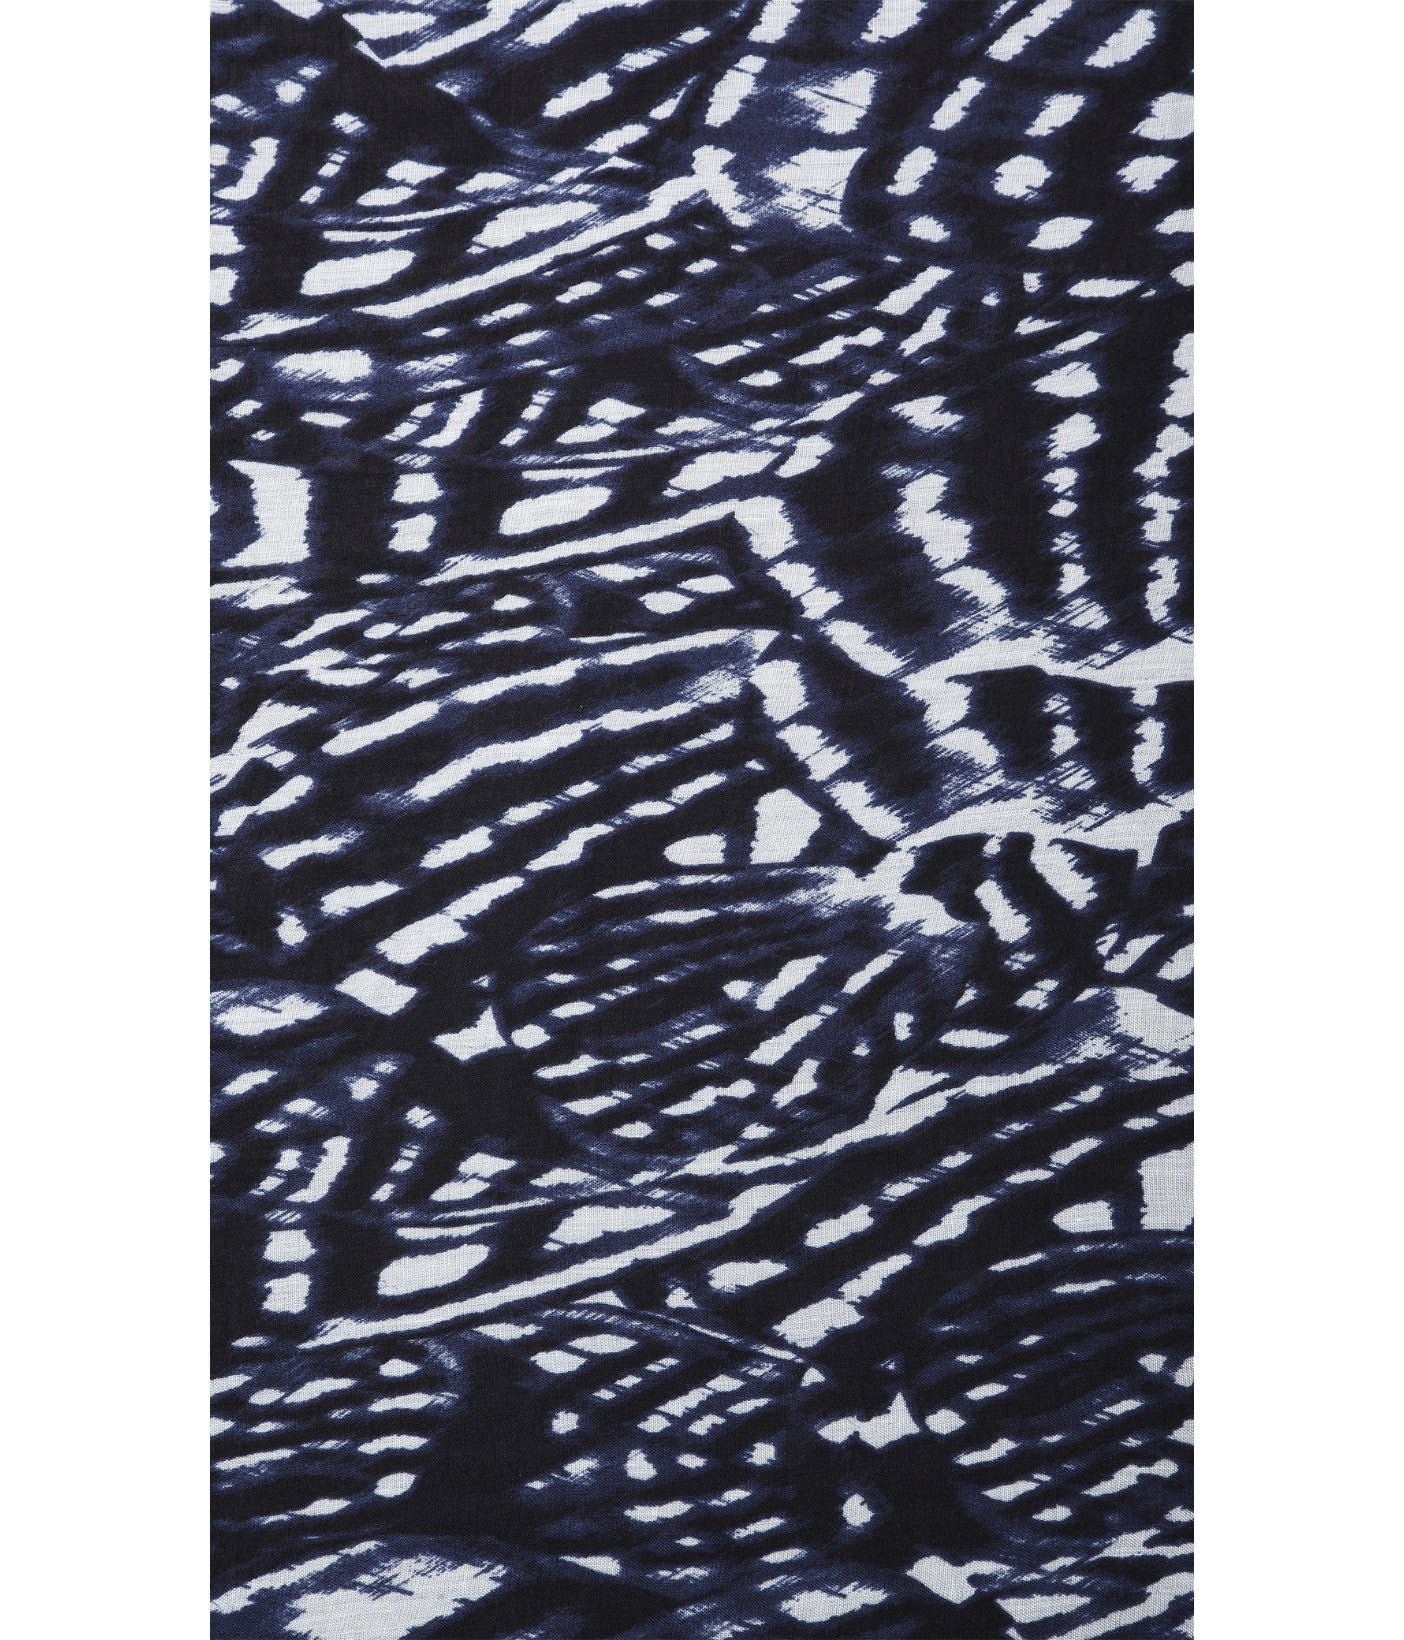 (D) Express knit Zebra Print Wrap Dress